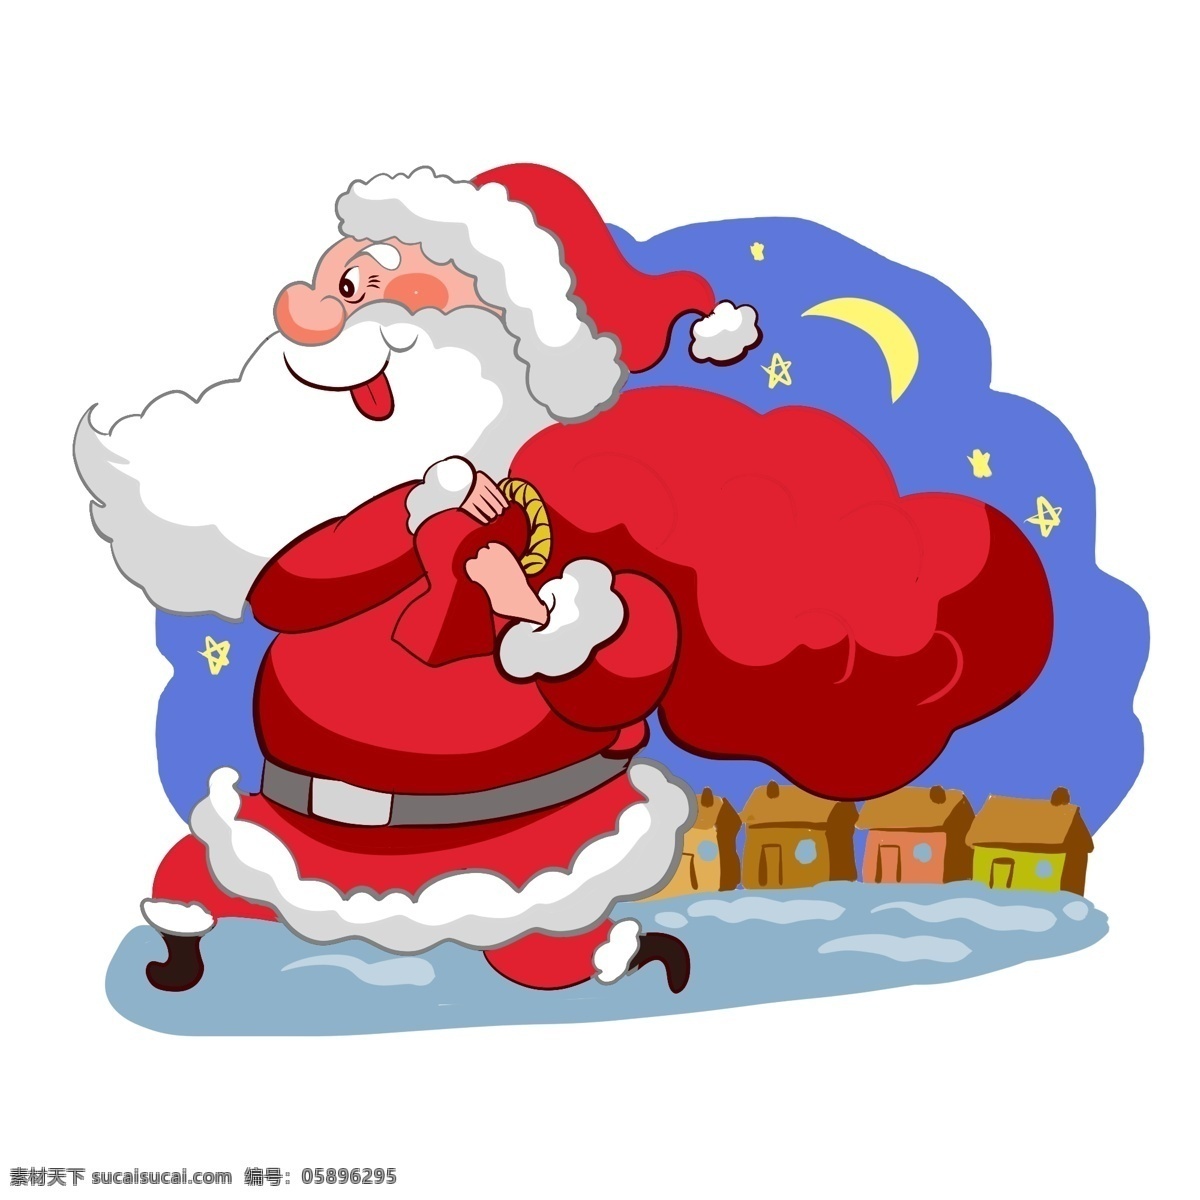 圣诞老人 背着 礼物 背着礼物 送礼 西方 宗教 夜晚 红色 圣诞帽 戴帽子的老人 形象 手绘 卡通